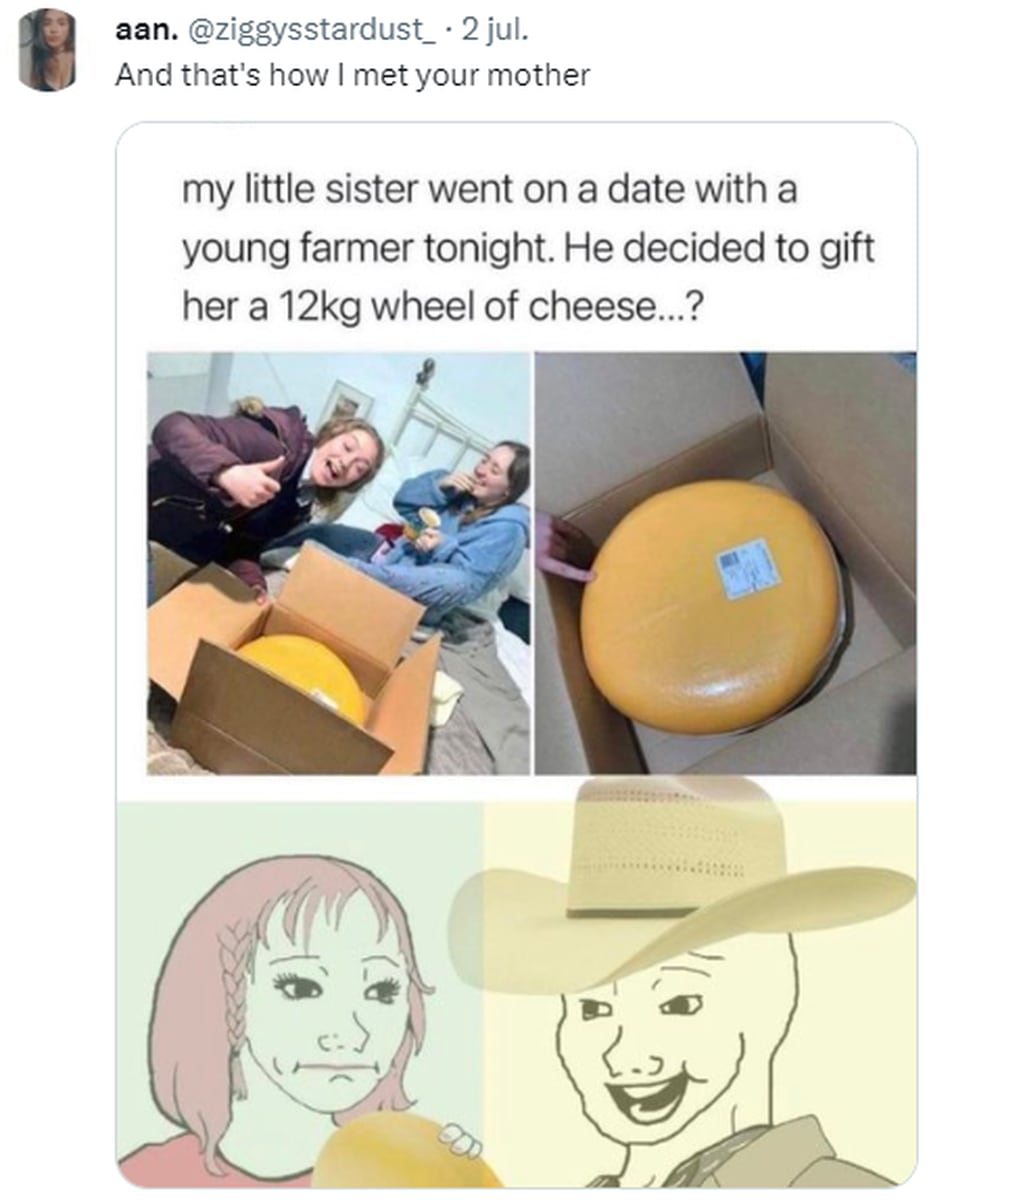 Le regaló un queso de 12 kilos en la primera cita